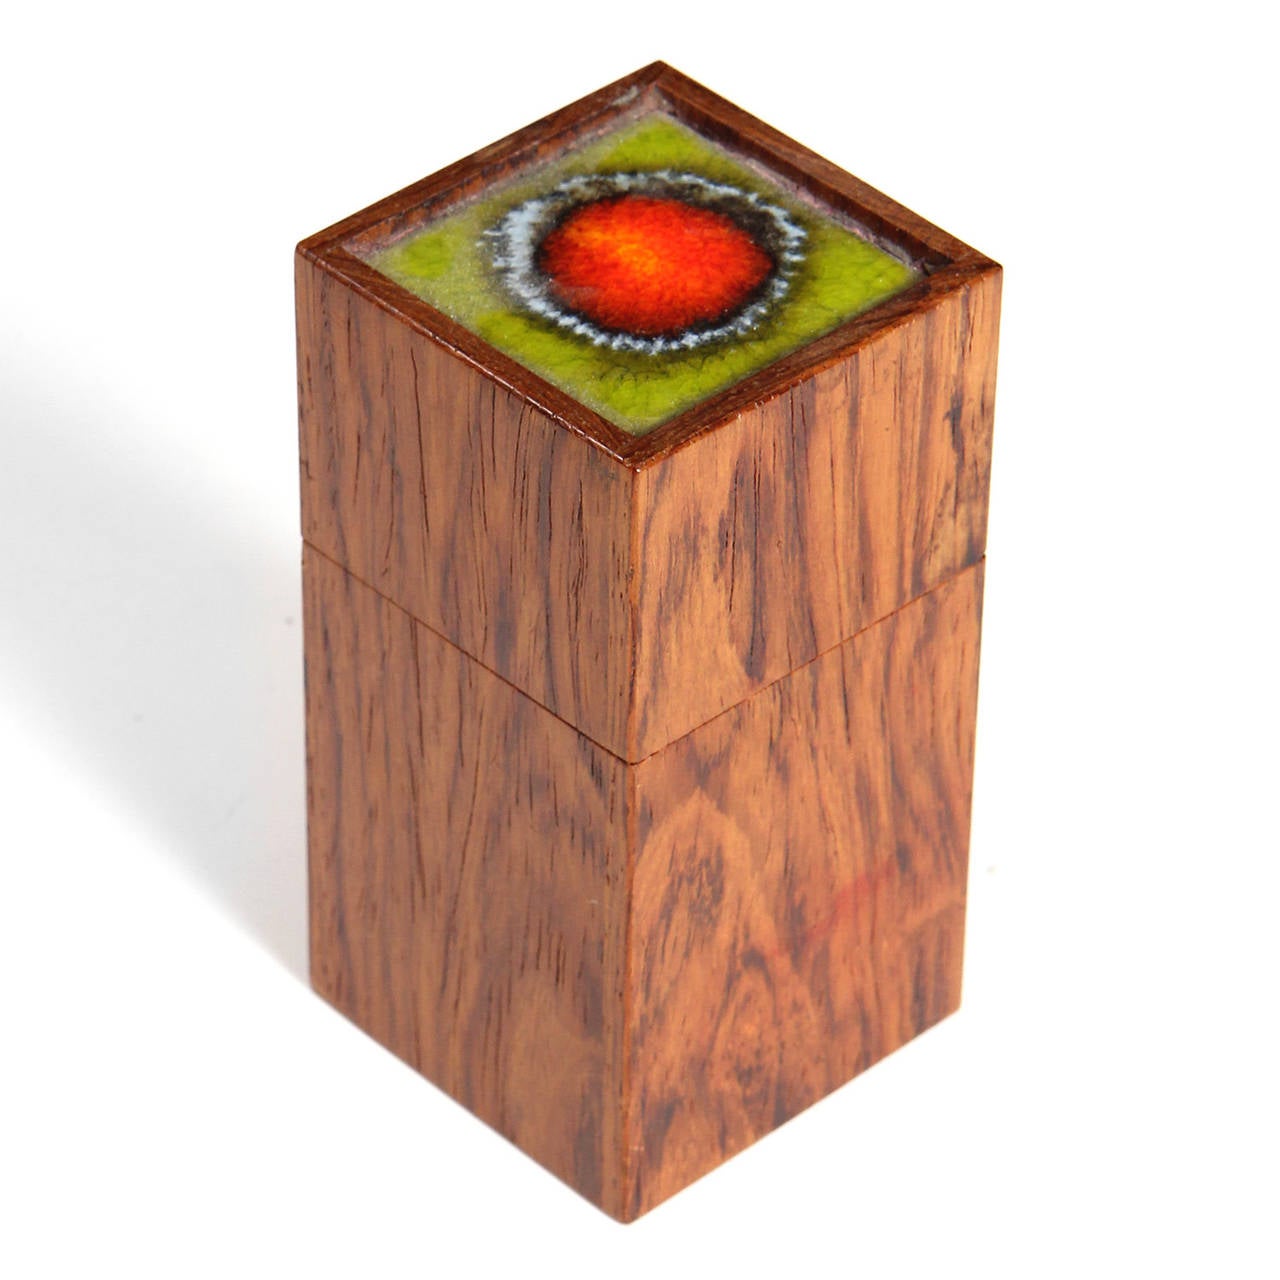 Cette boîte à bijoux en bois de rose est fabriquée de main de maître. Le couvercle est orné d'un carreau de céramique coloré vert et rouge.